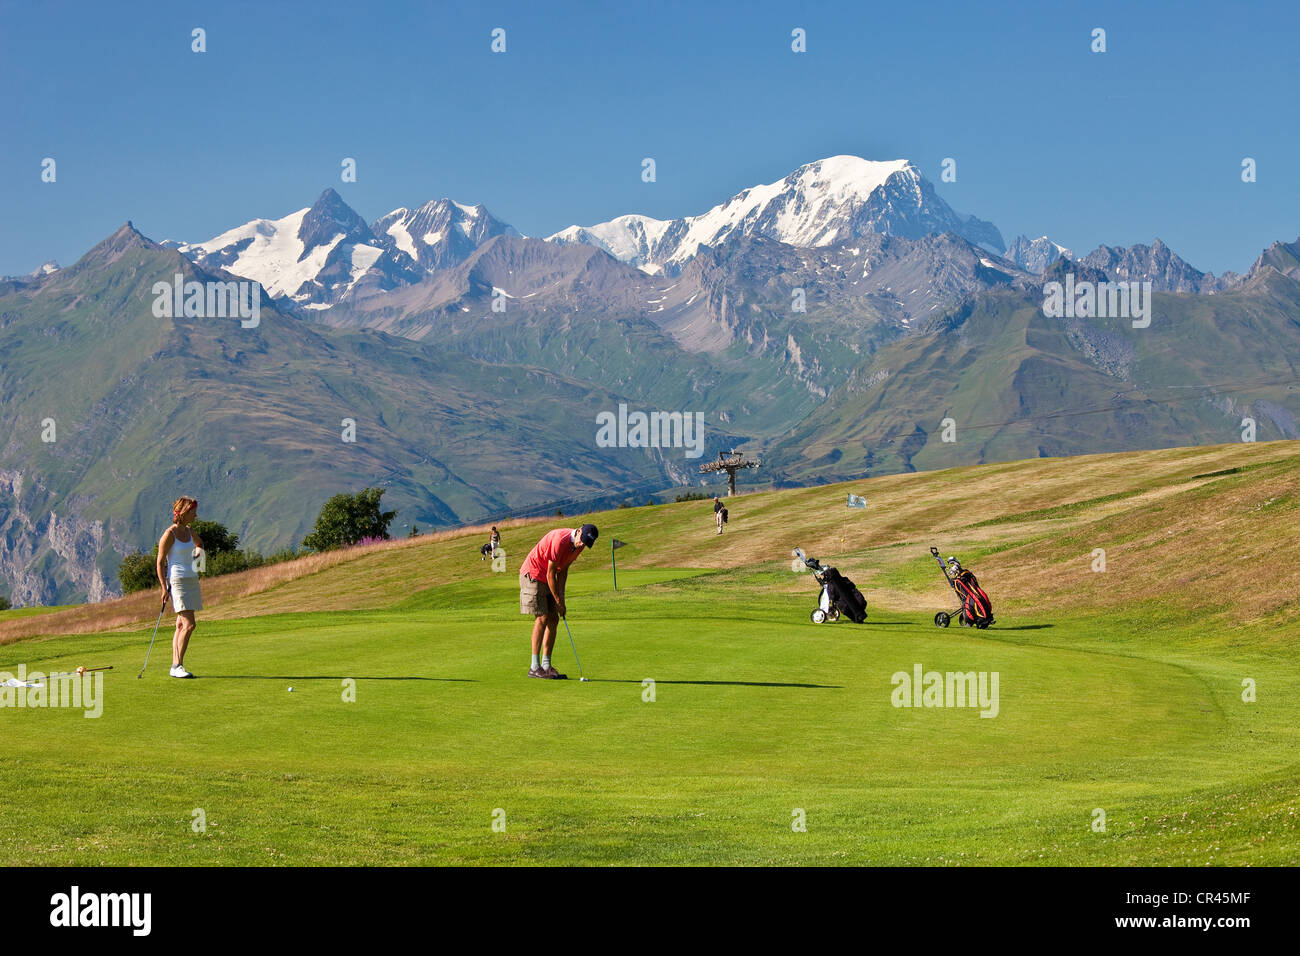 France, Savoie, Les Arcs 1800, the golf course facing Mont Blanc (4810 m) Stock Photo